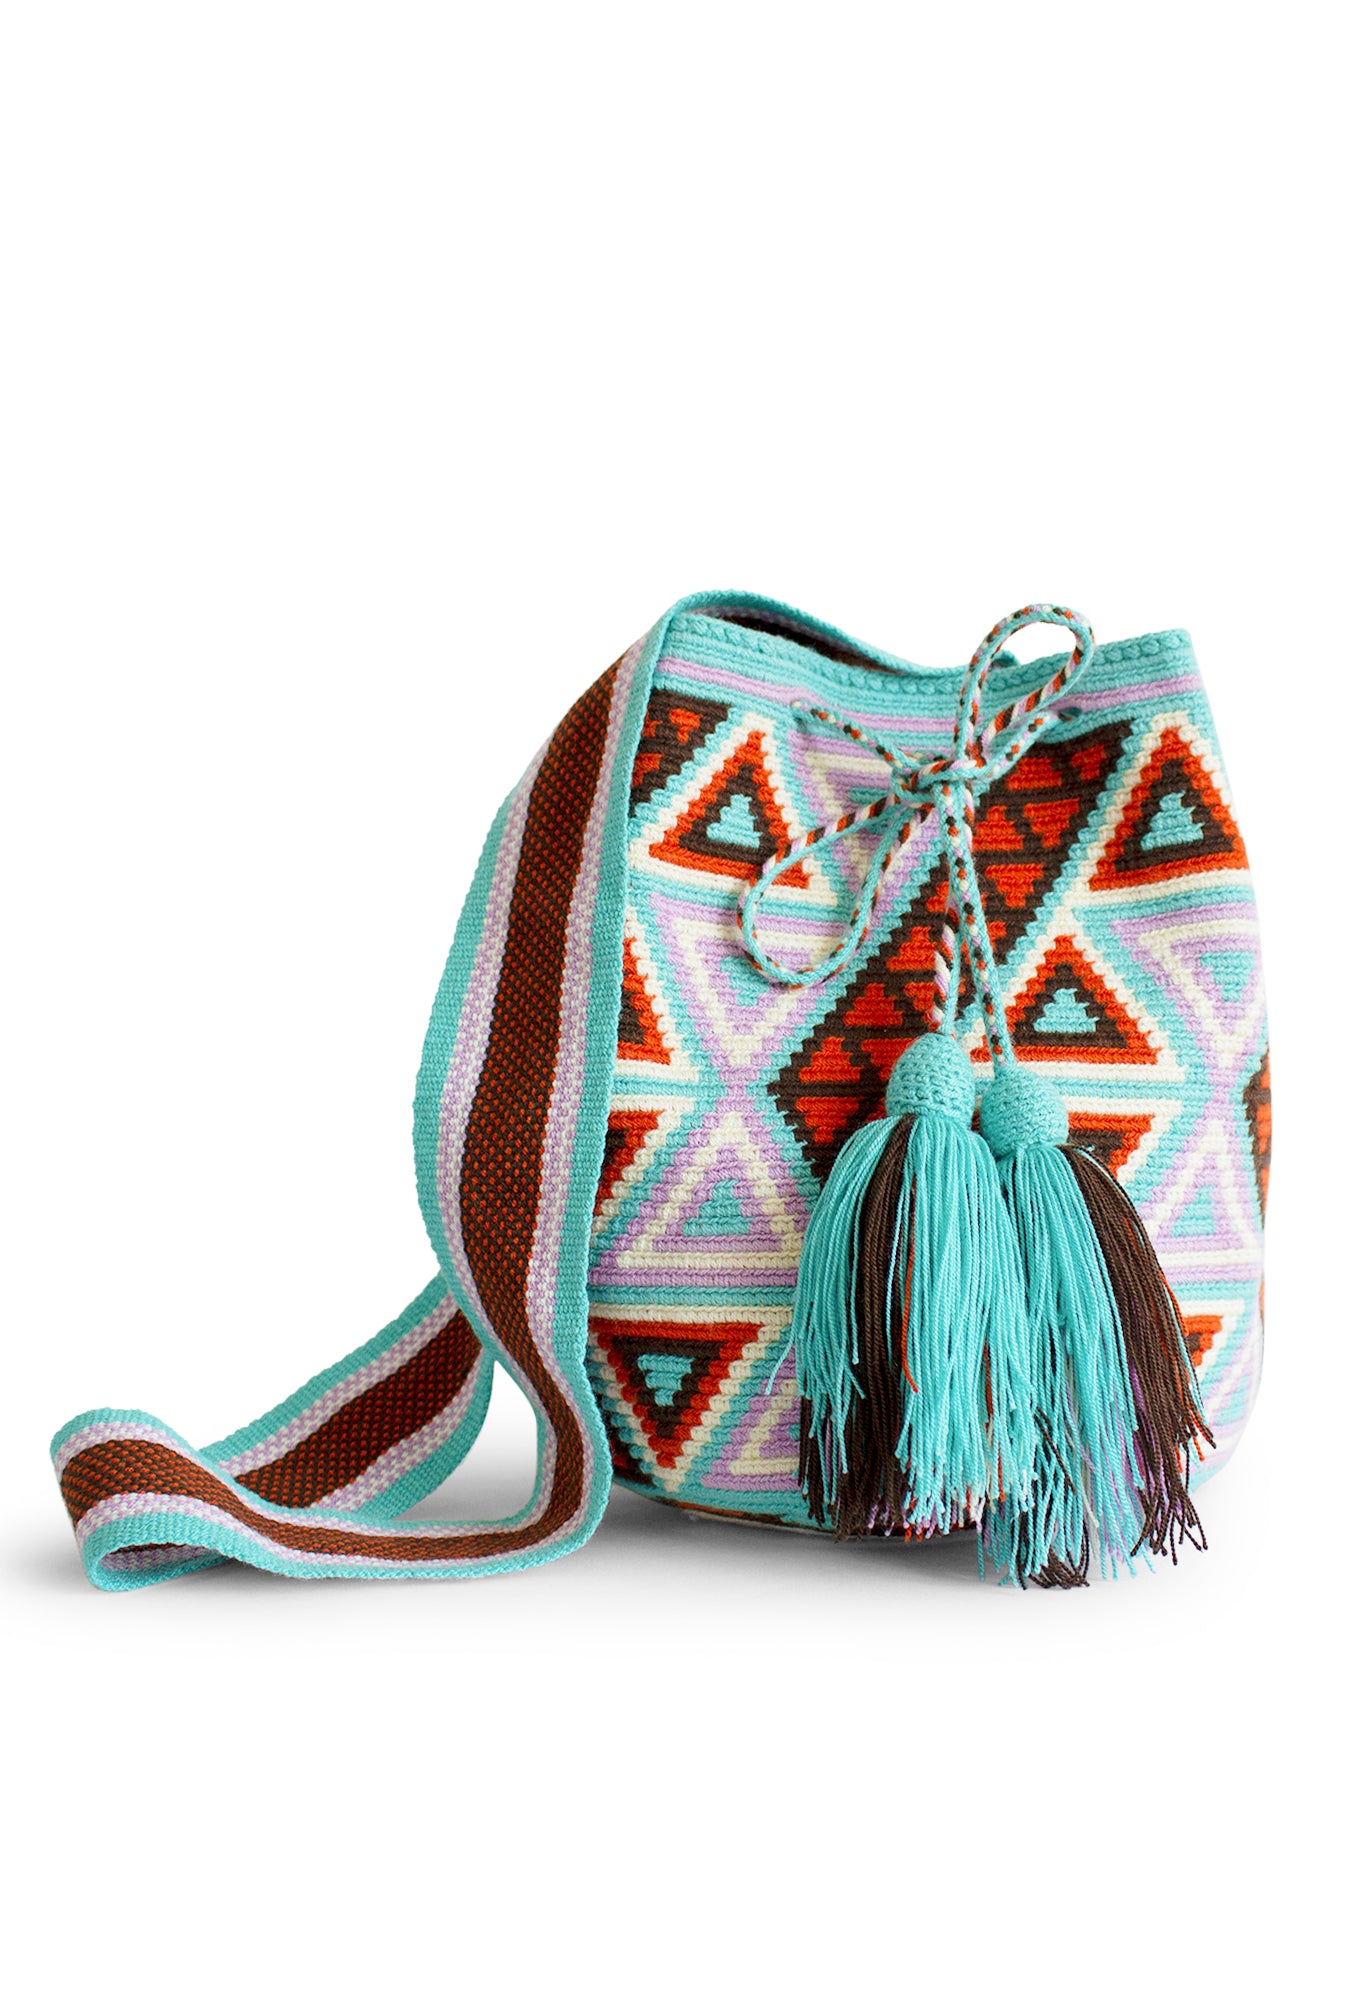 A’lapüjaa Wayuu Mochila Bag